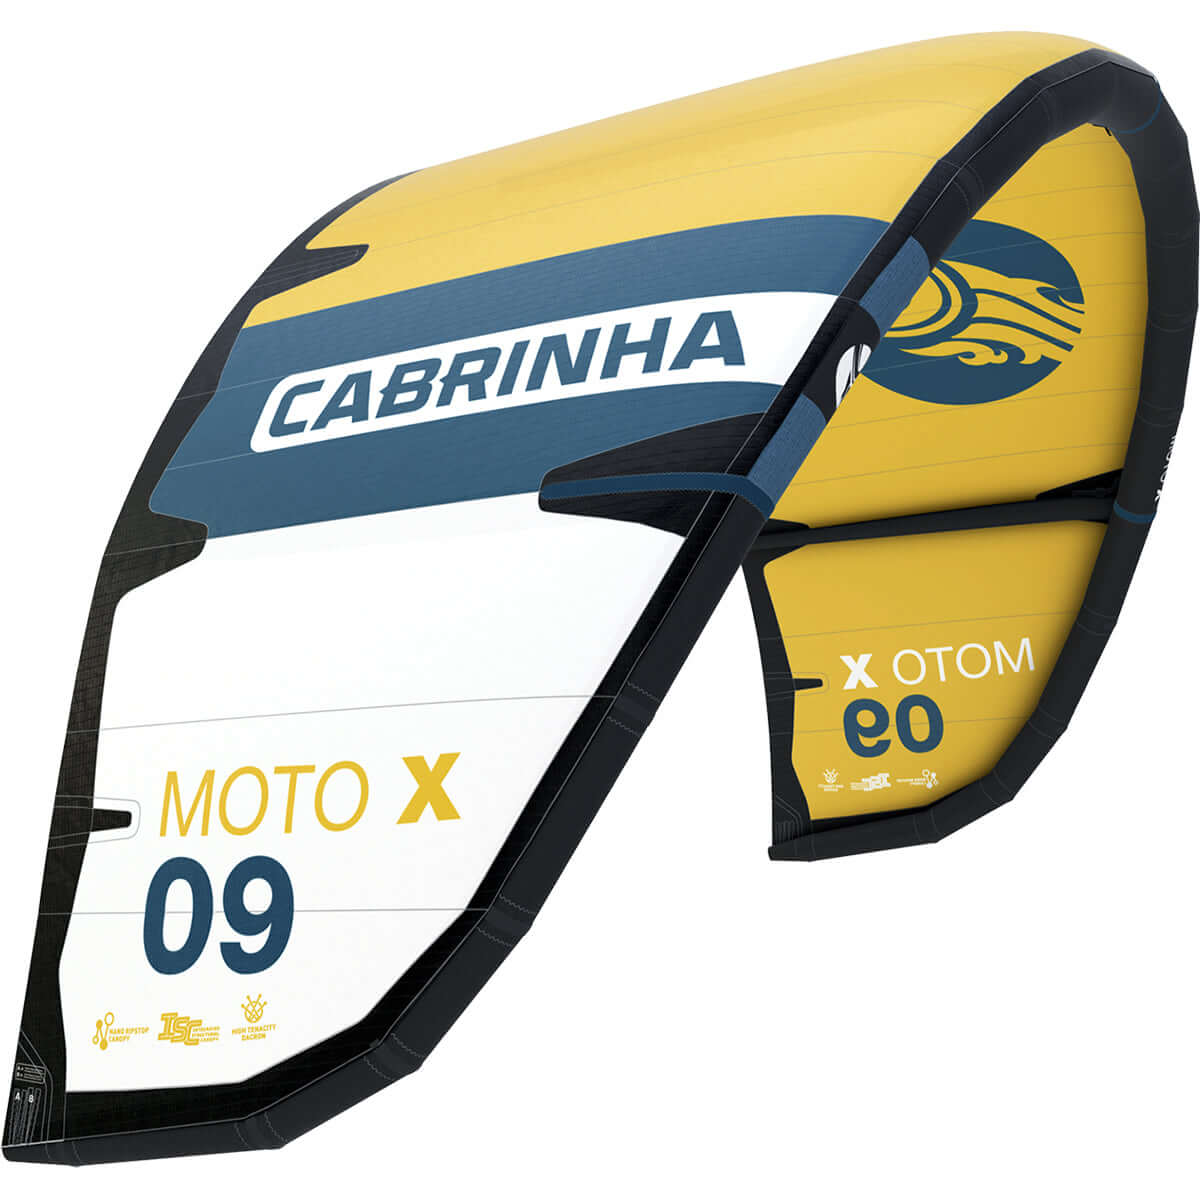 Cabrinha 24 Moto_X only – Kite